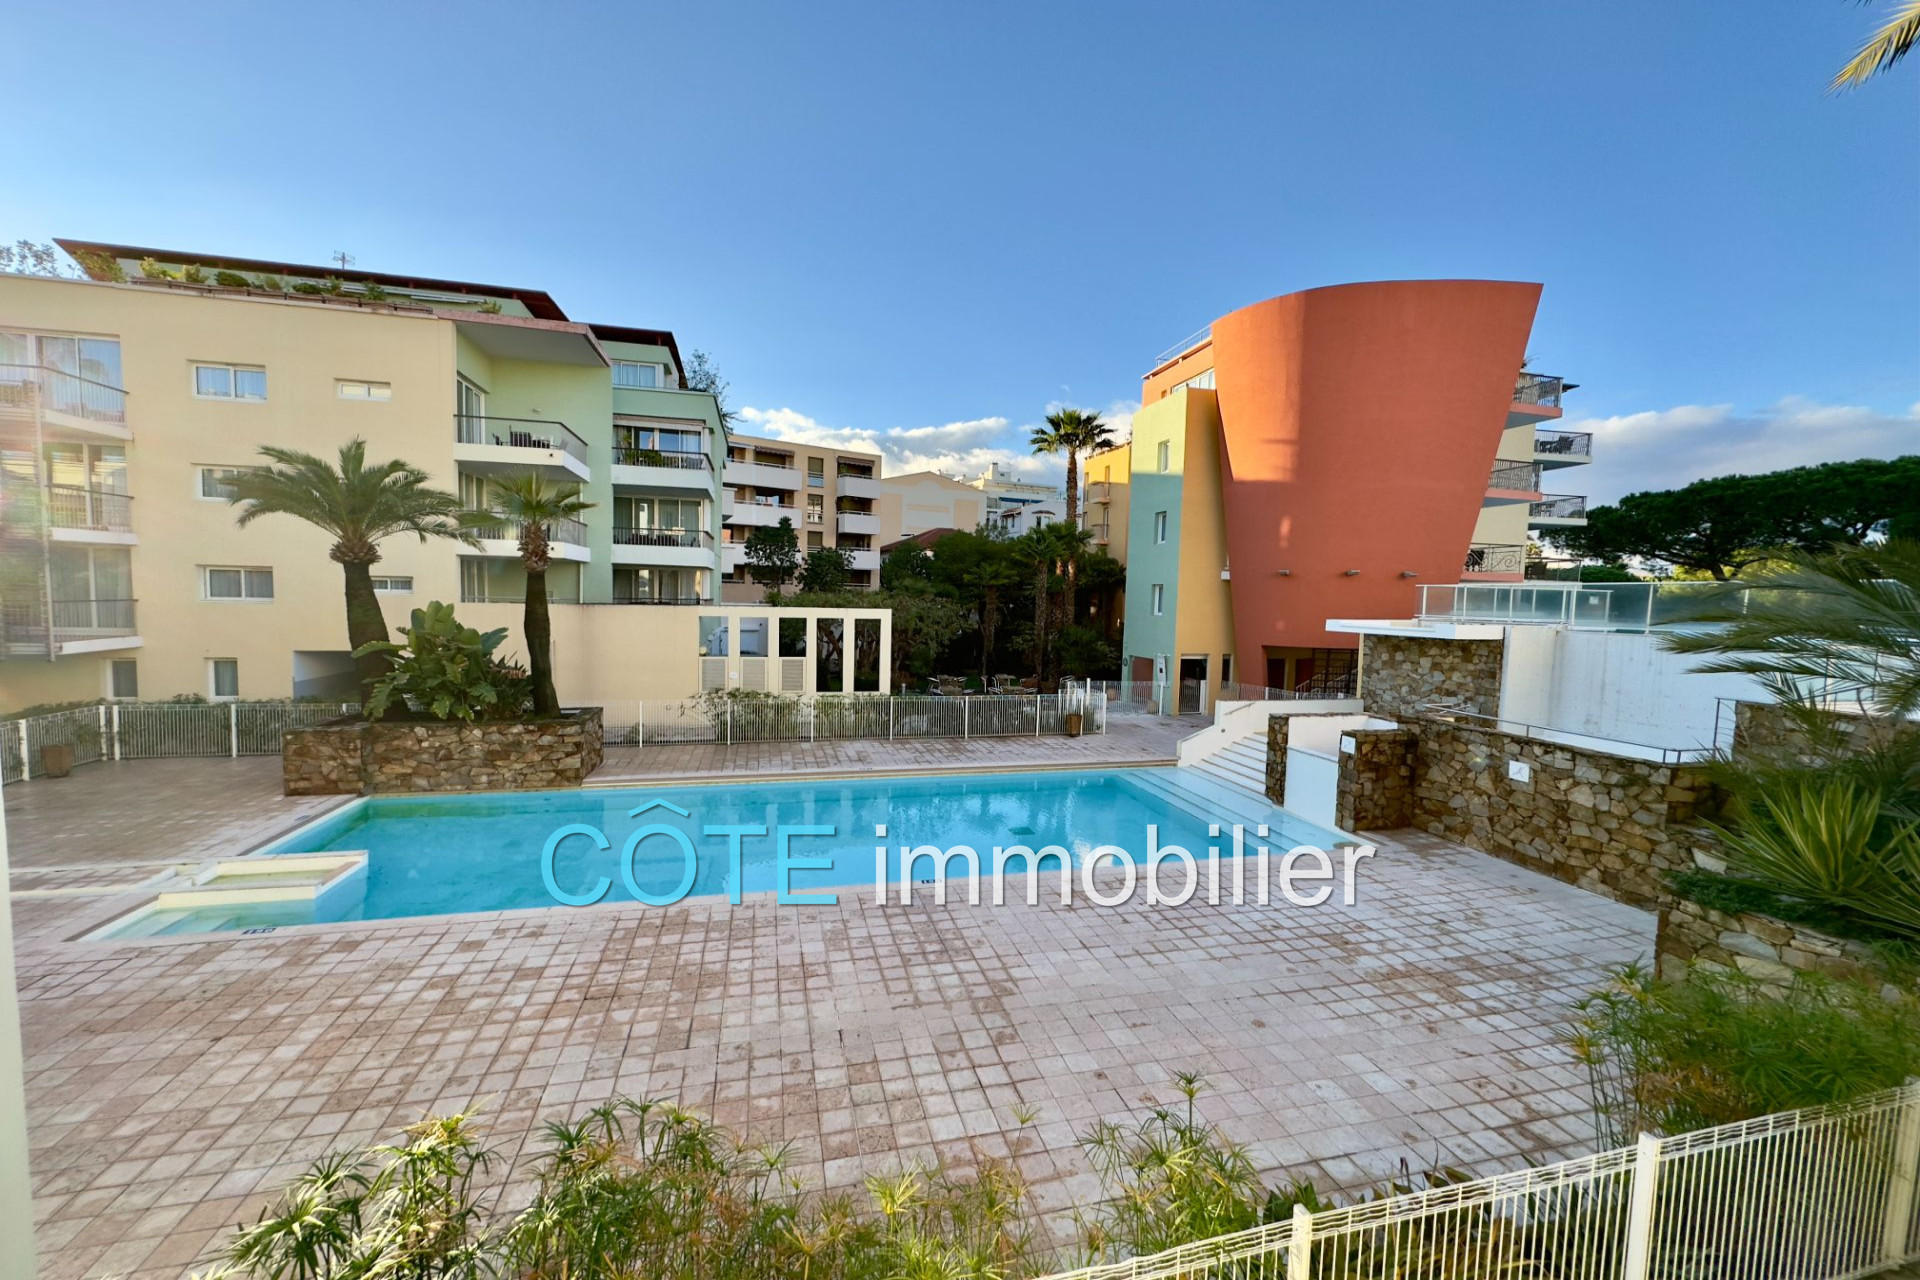 Vente Appartement 32m² à Antibes (06600) - Côte Immobilier